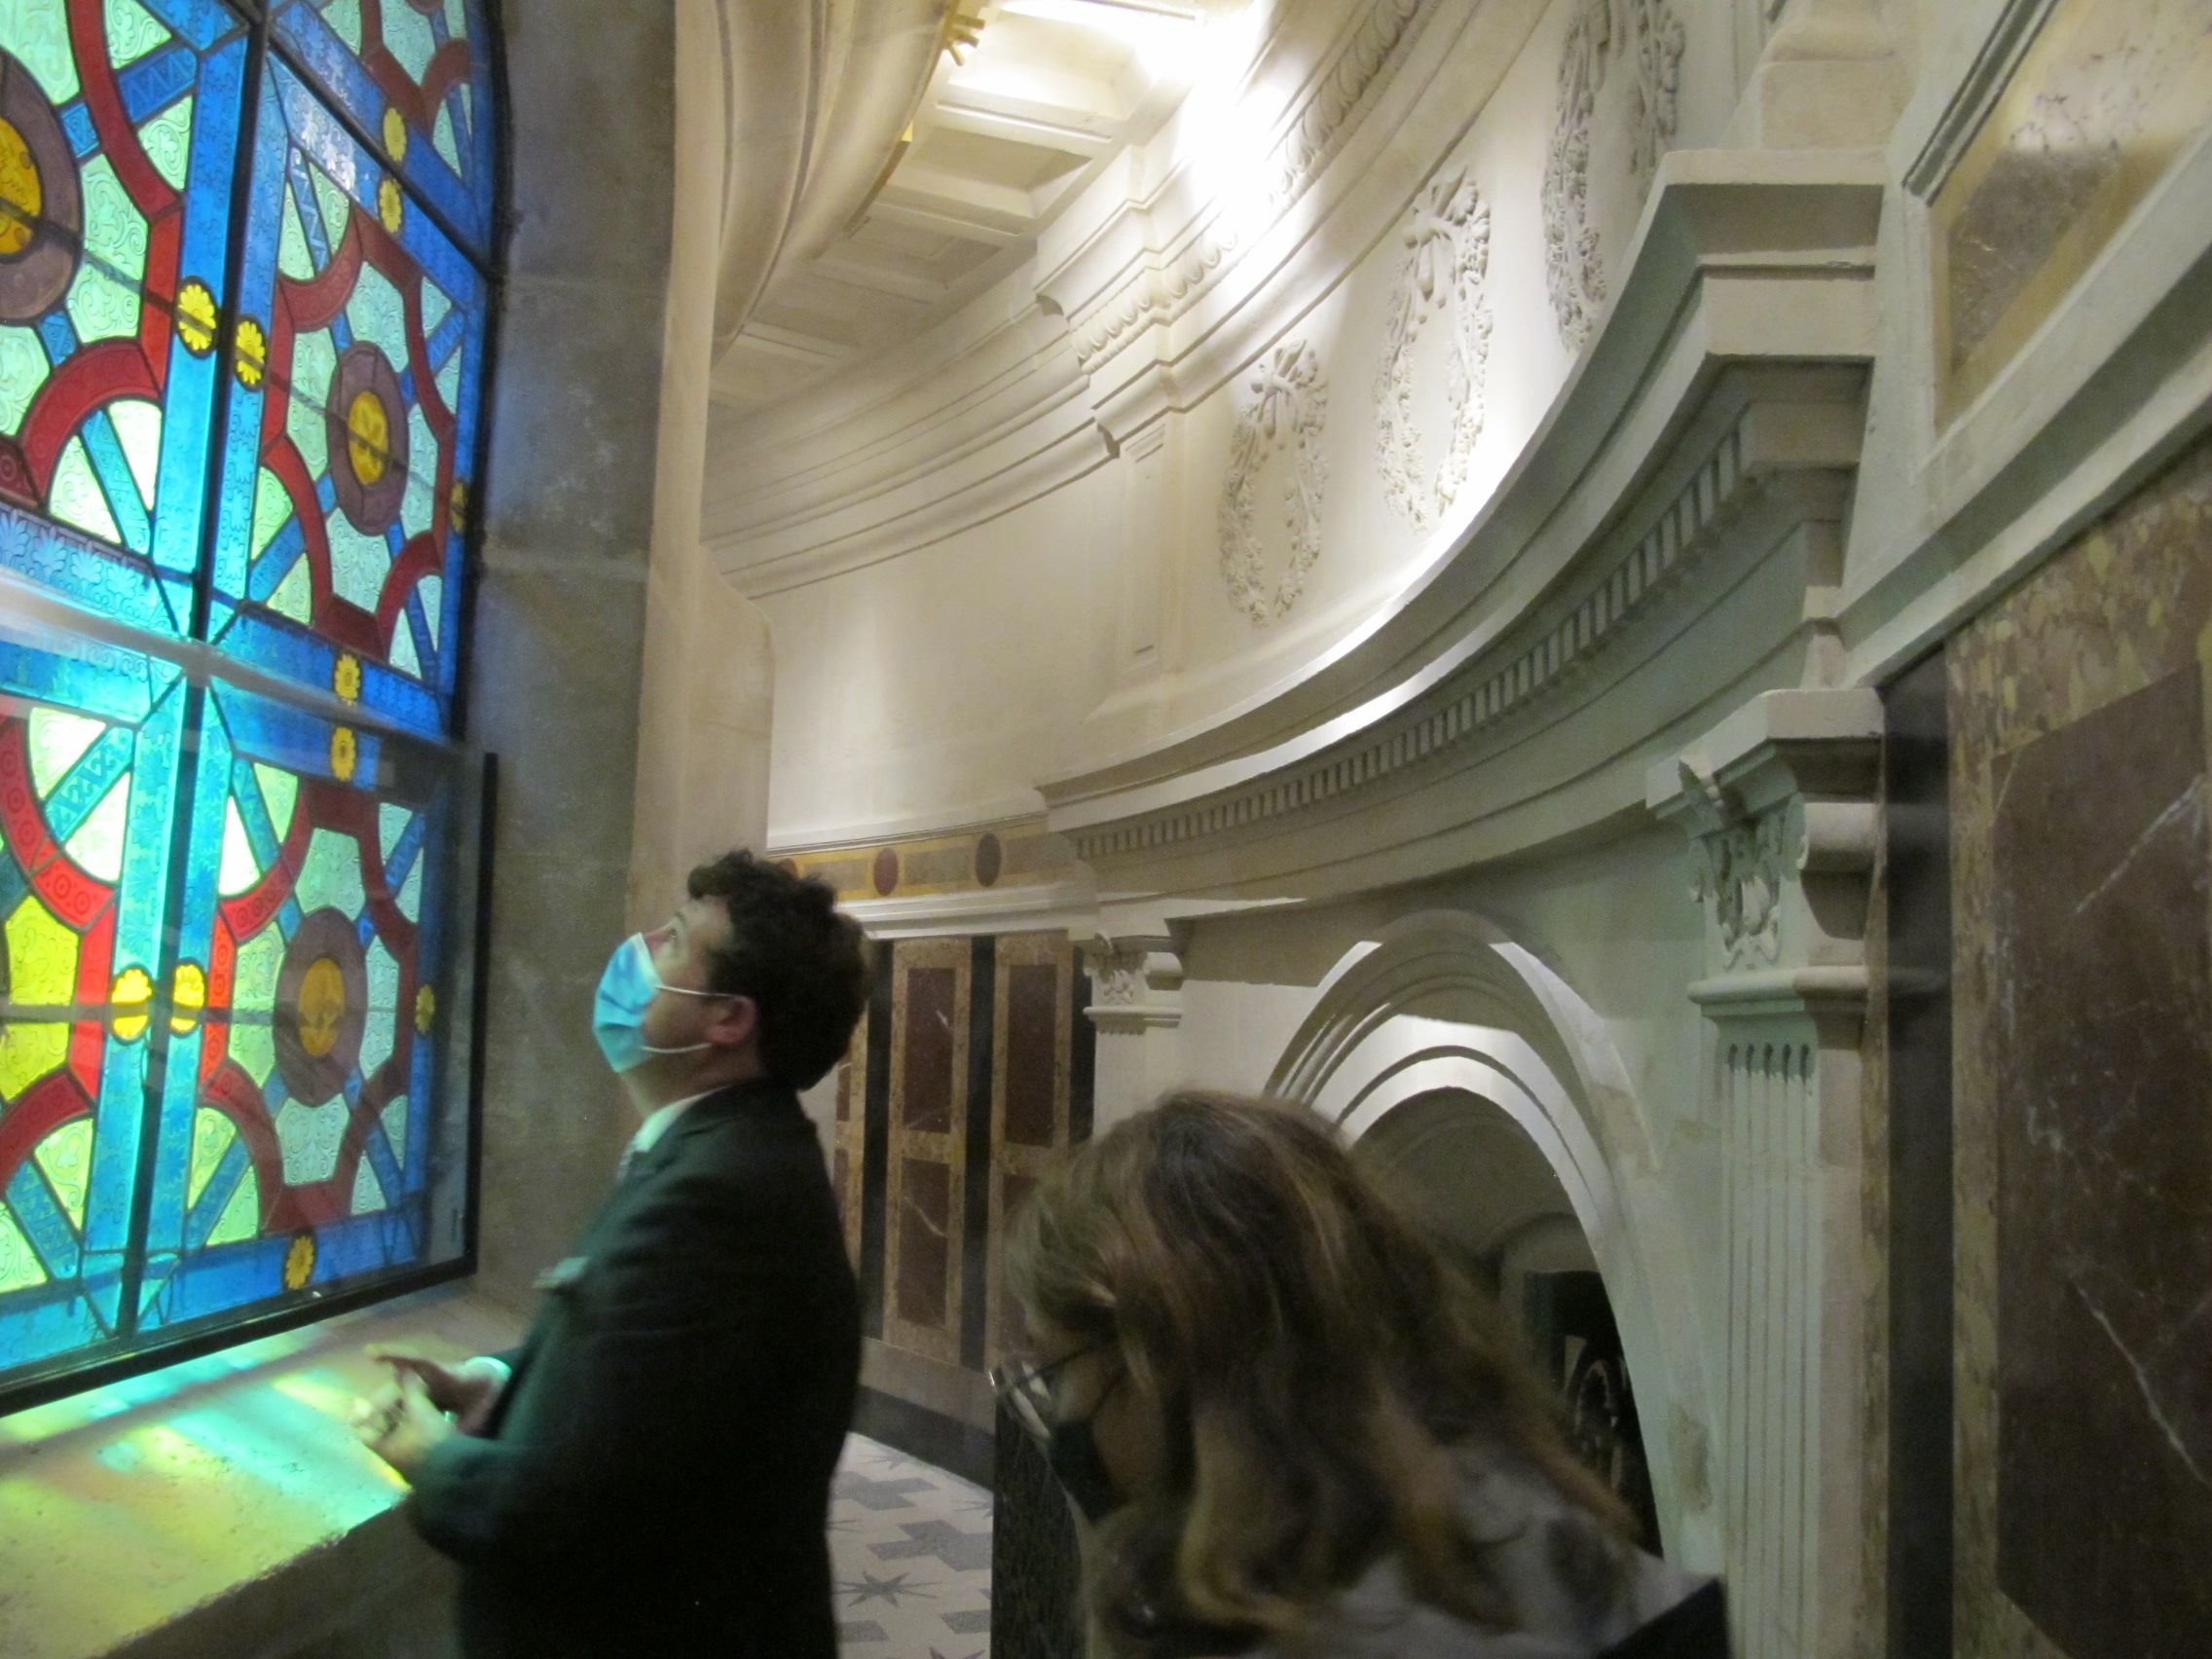 La galerie circulaire qui court sous le piédestal de la colonne de Juillet, place de la Bastille (IVe), est ornée de vitraux éclairés par la lumière de la courette intérieure et de marbres polychromes. LP/Philippe Baverel